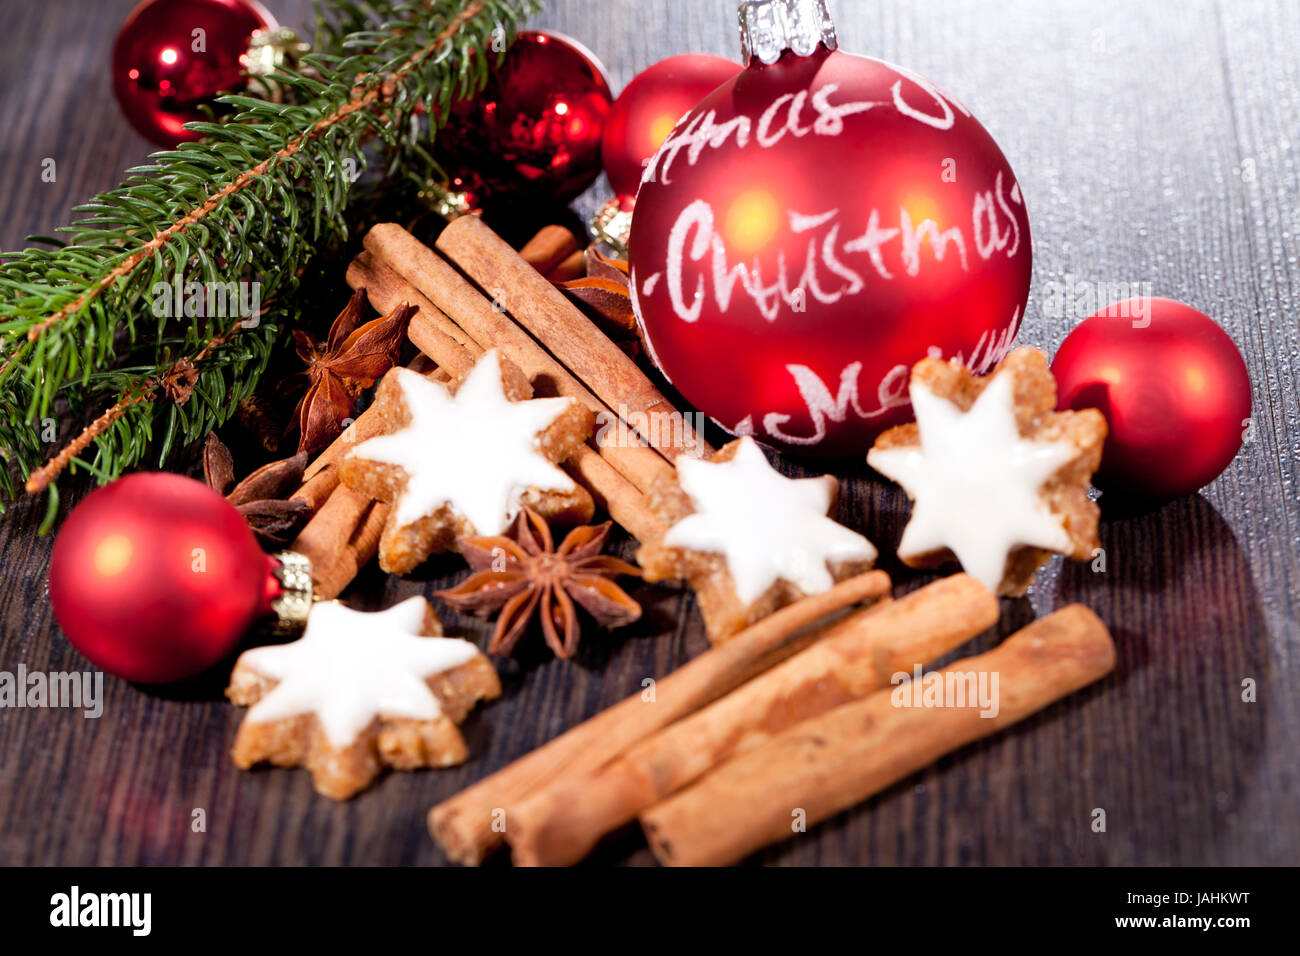 weihnachtsgebäck zimtsterne und zimtstangen dekoration im winter makro nahaufnahme Stock Photo